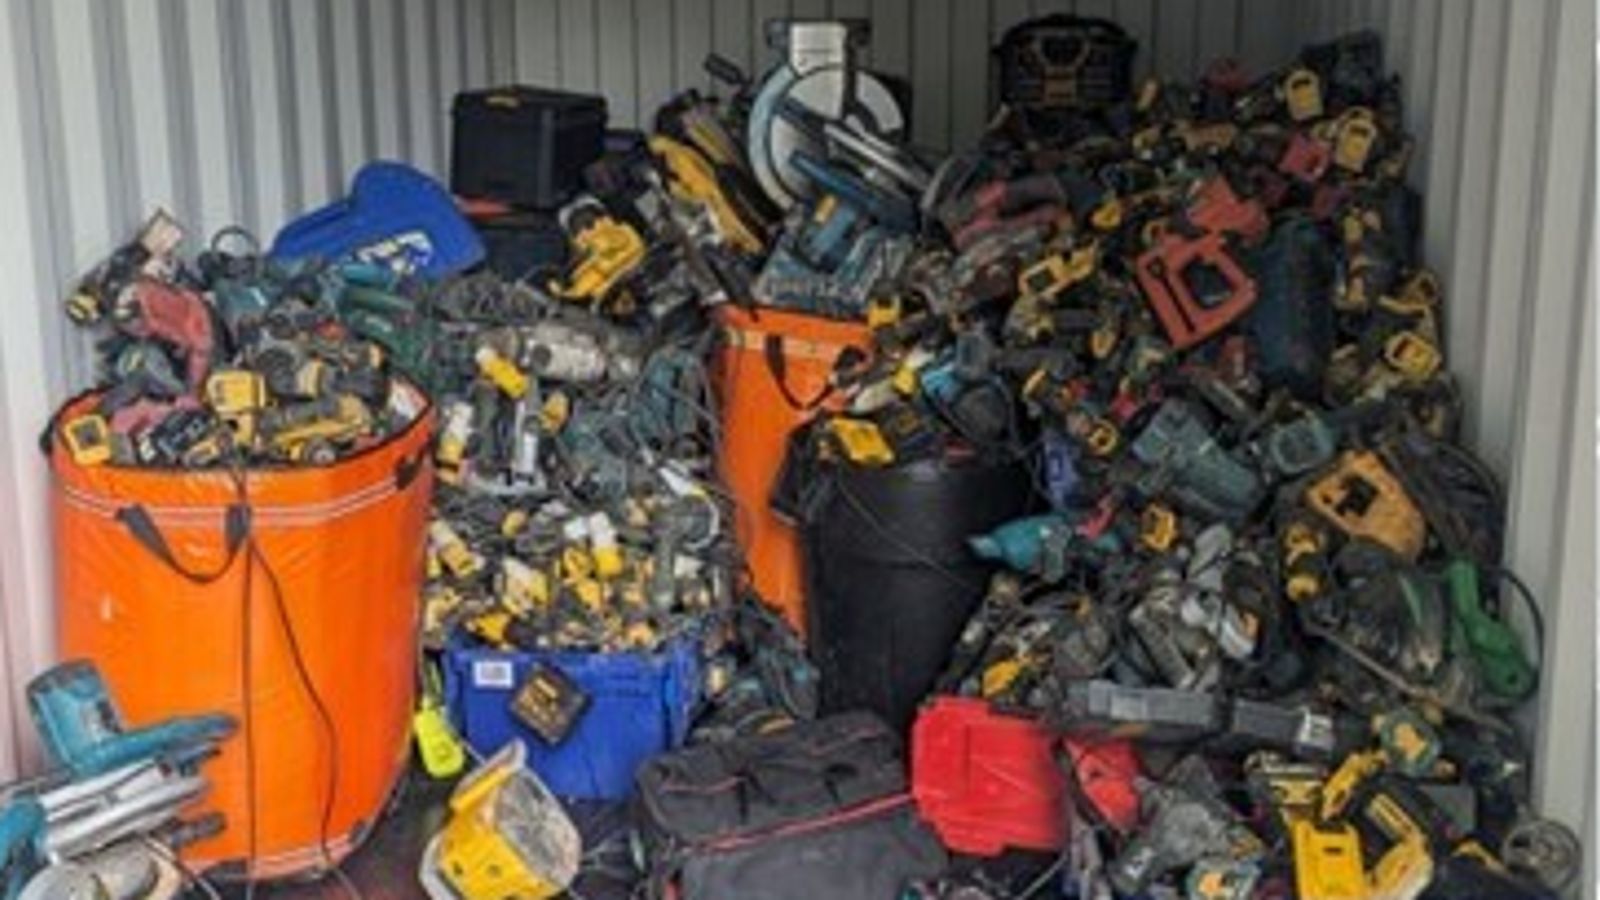 Електрически инструмент с проследяващо устройство води полицията в Кент до съкровище от £500 000 за предполагаеми откраднати стоки